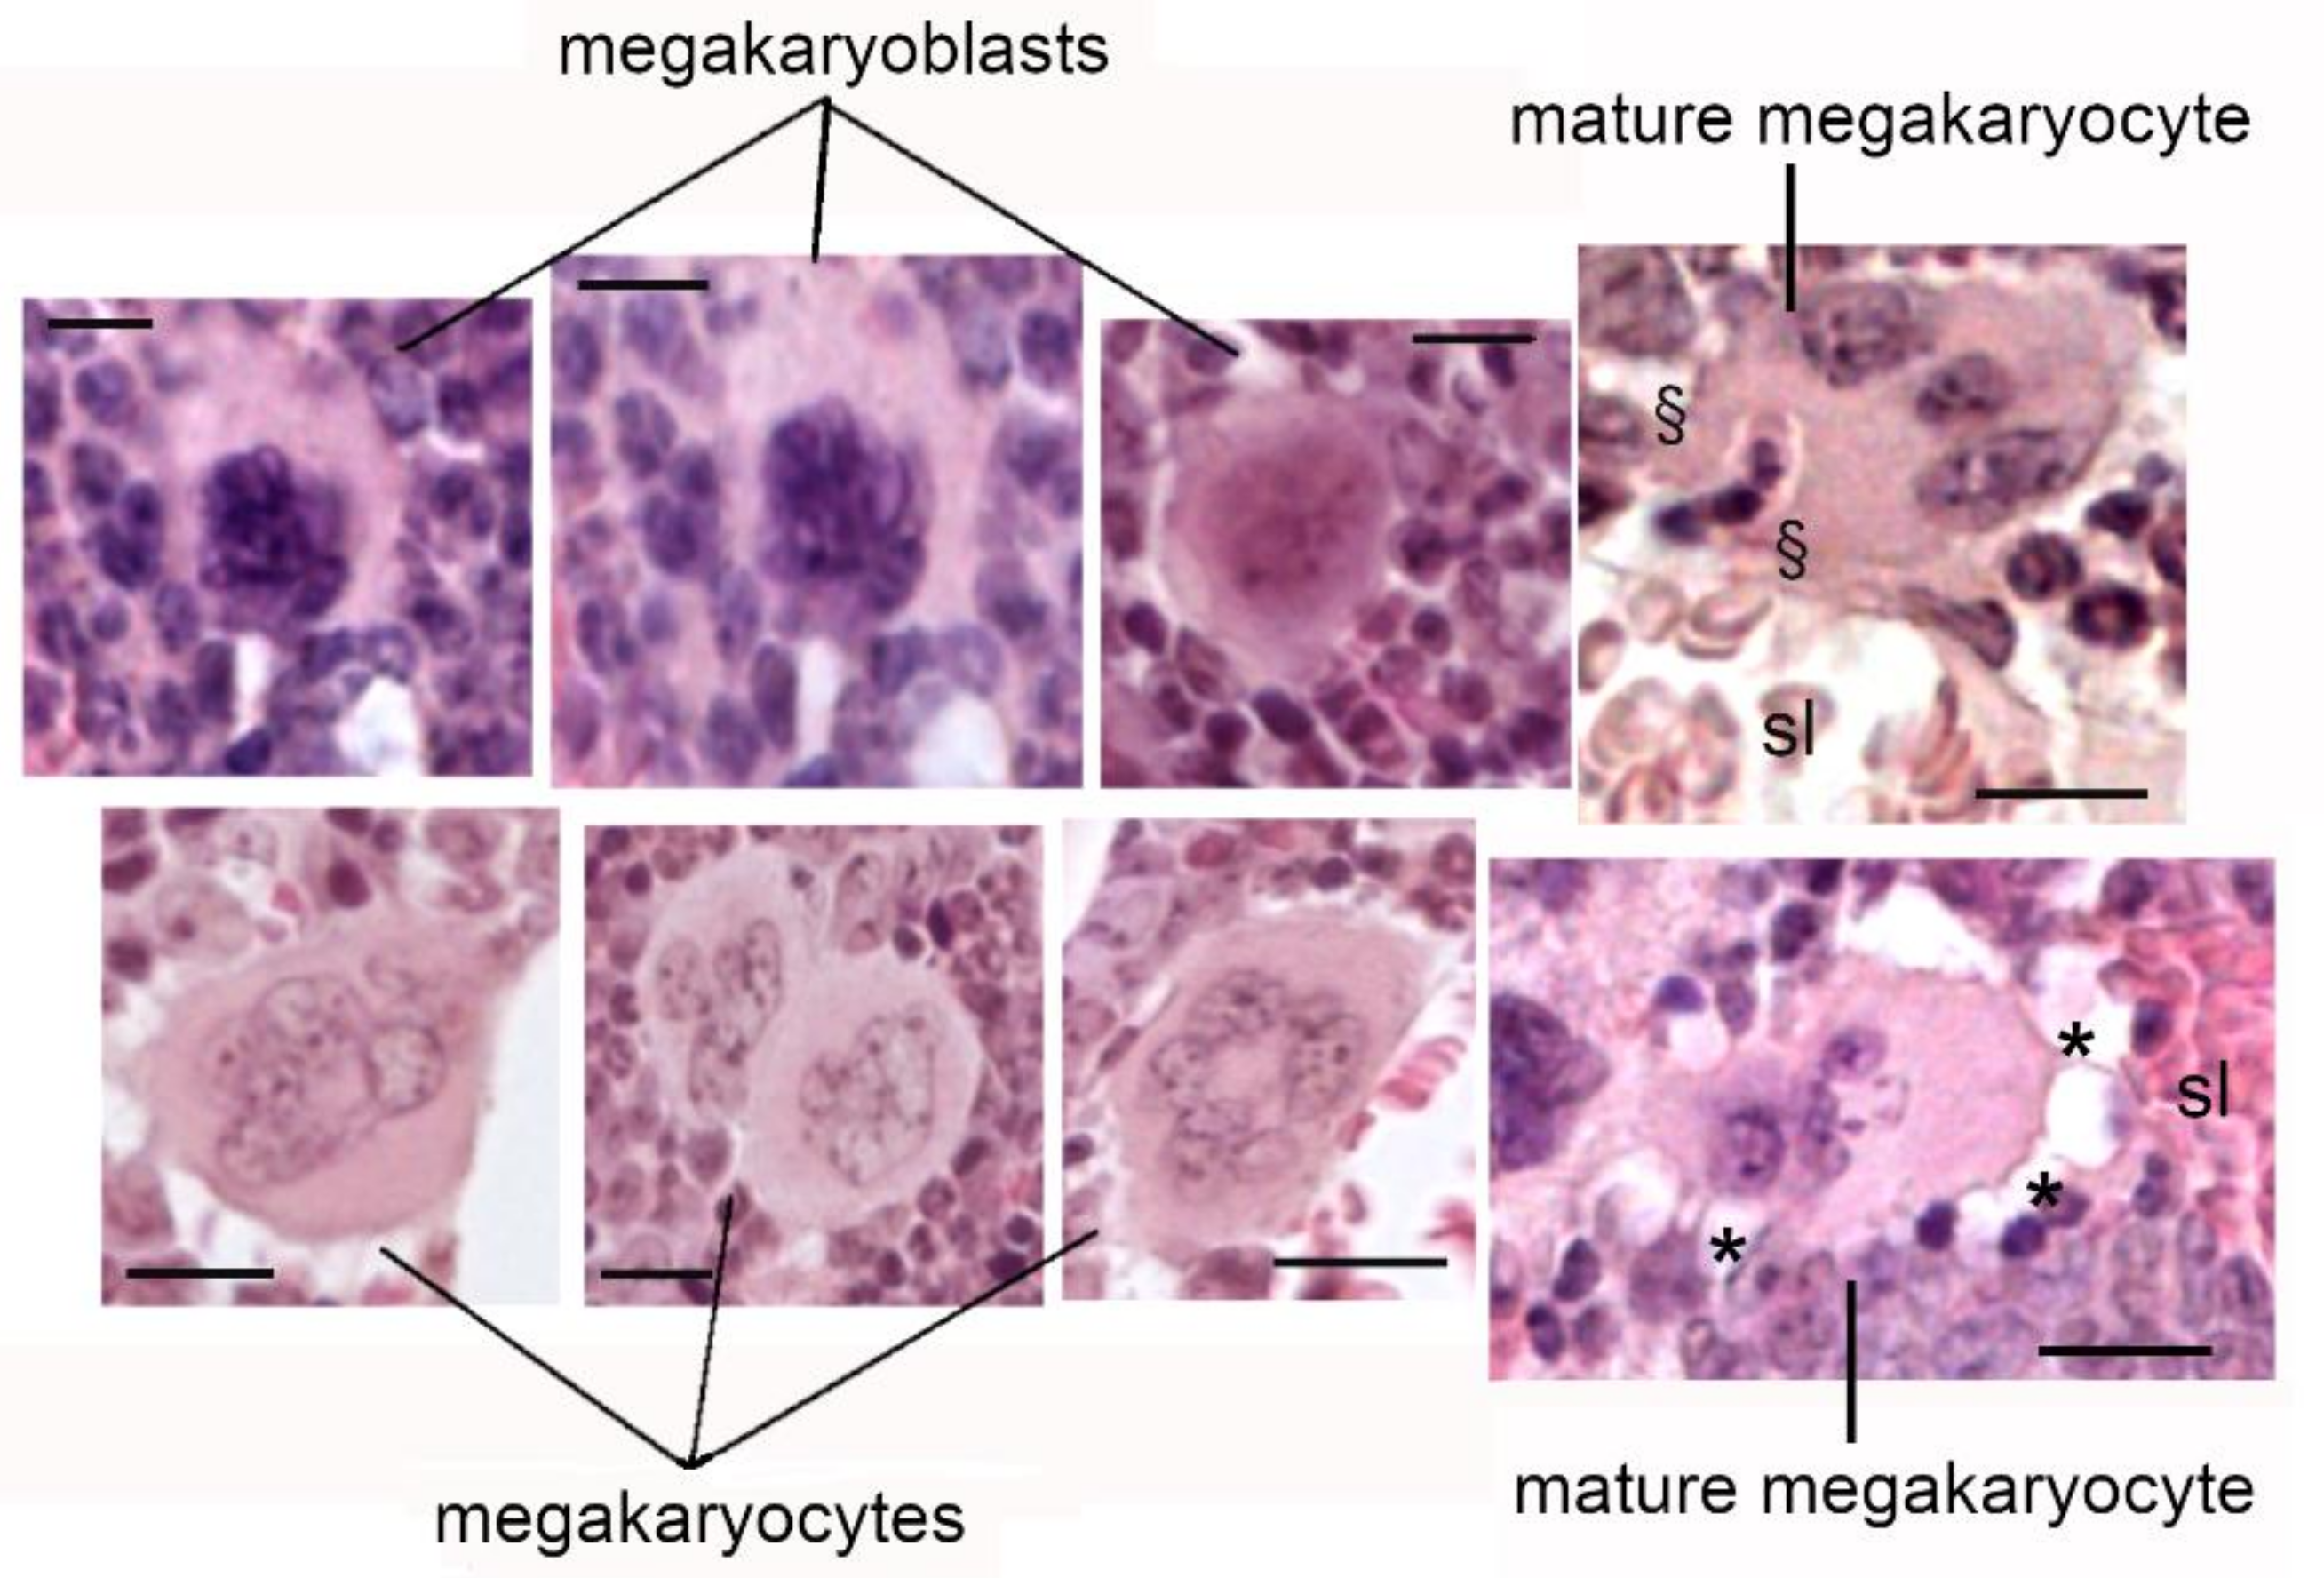 megakaryocyte histology